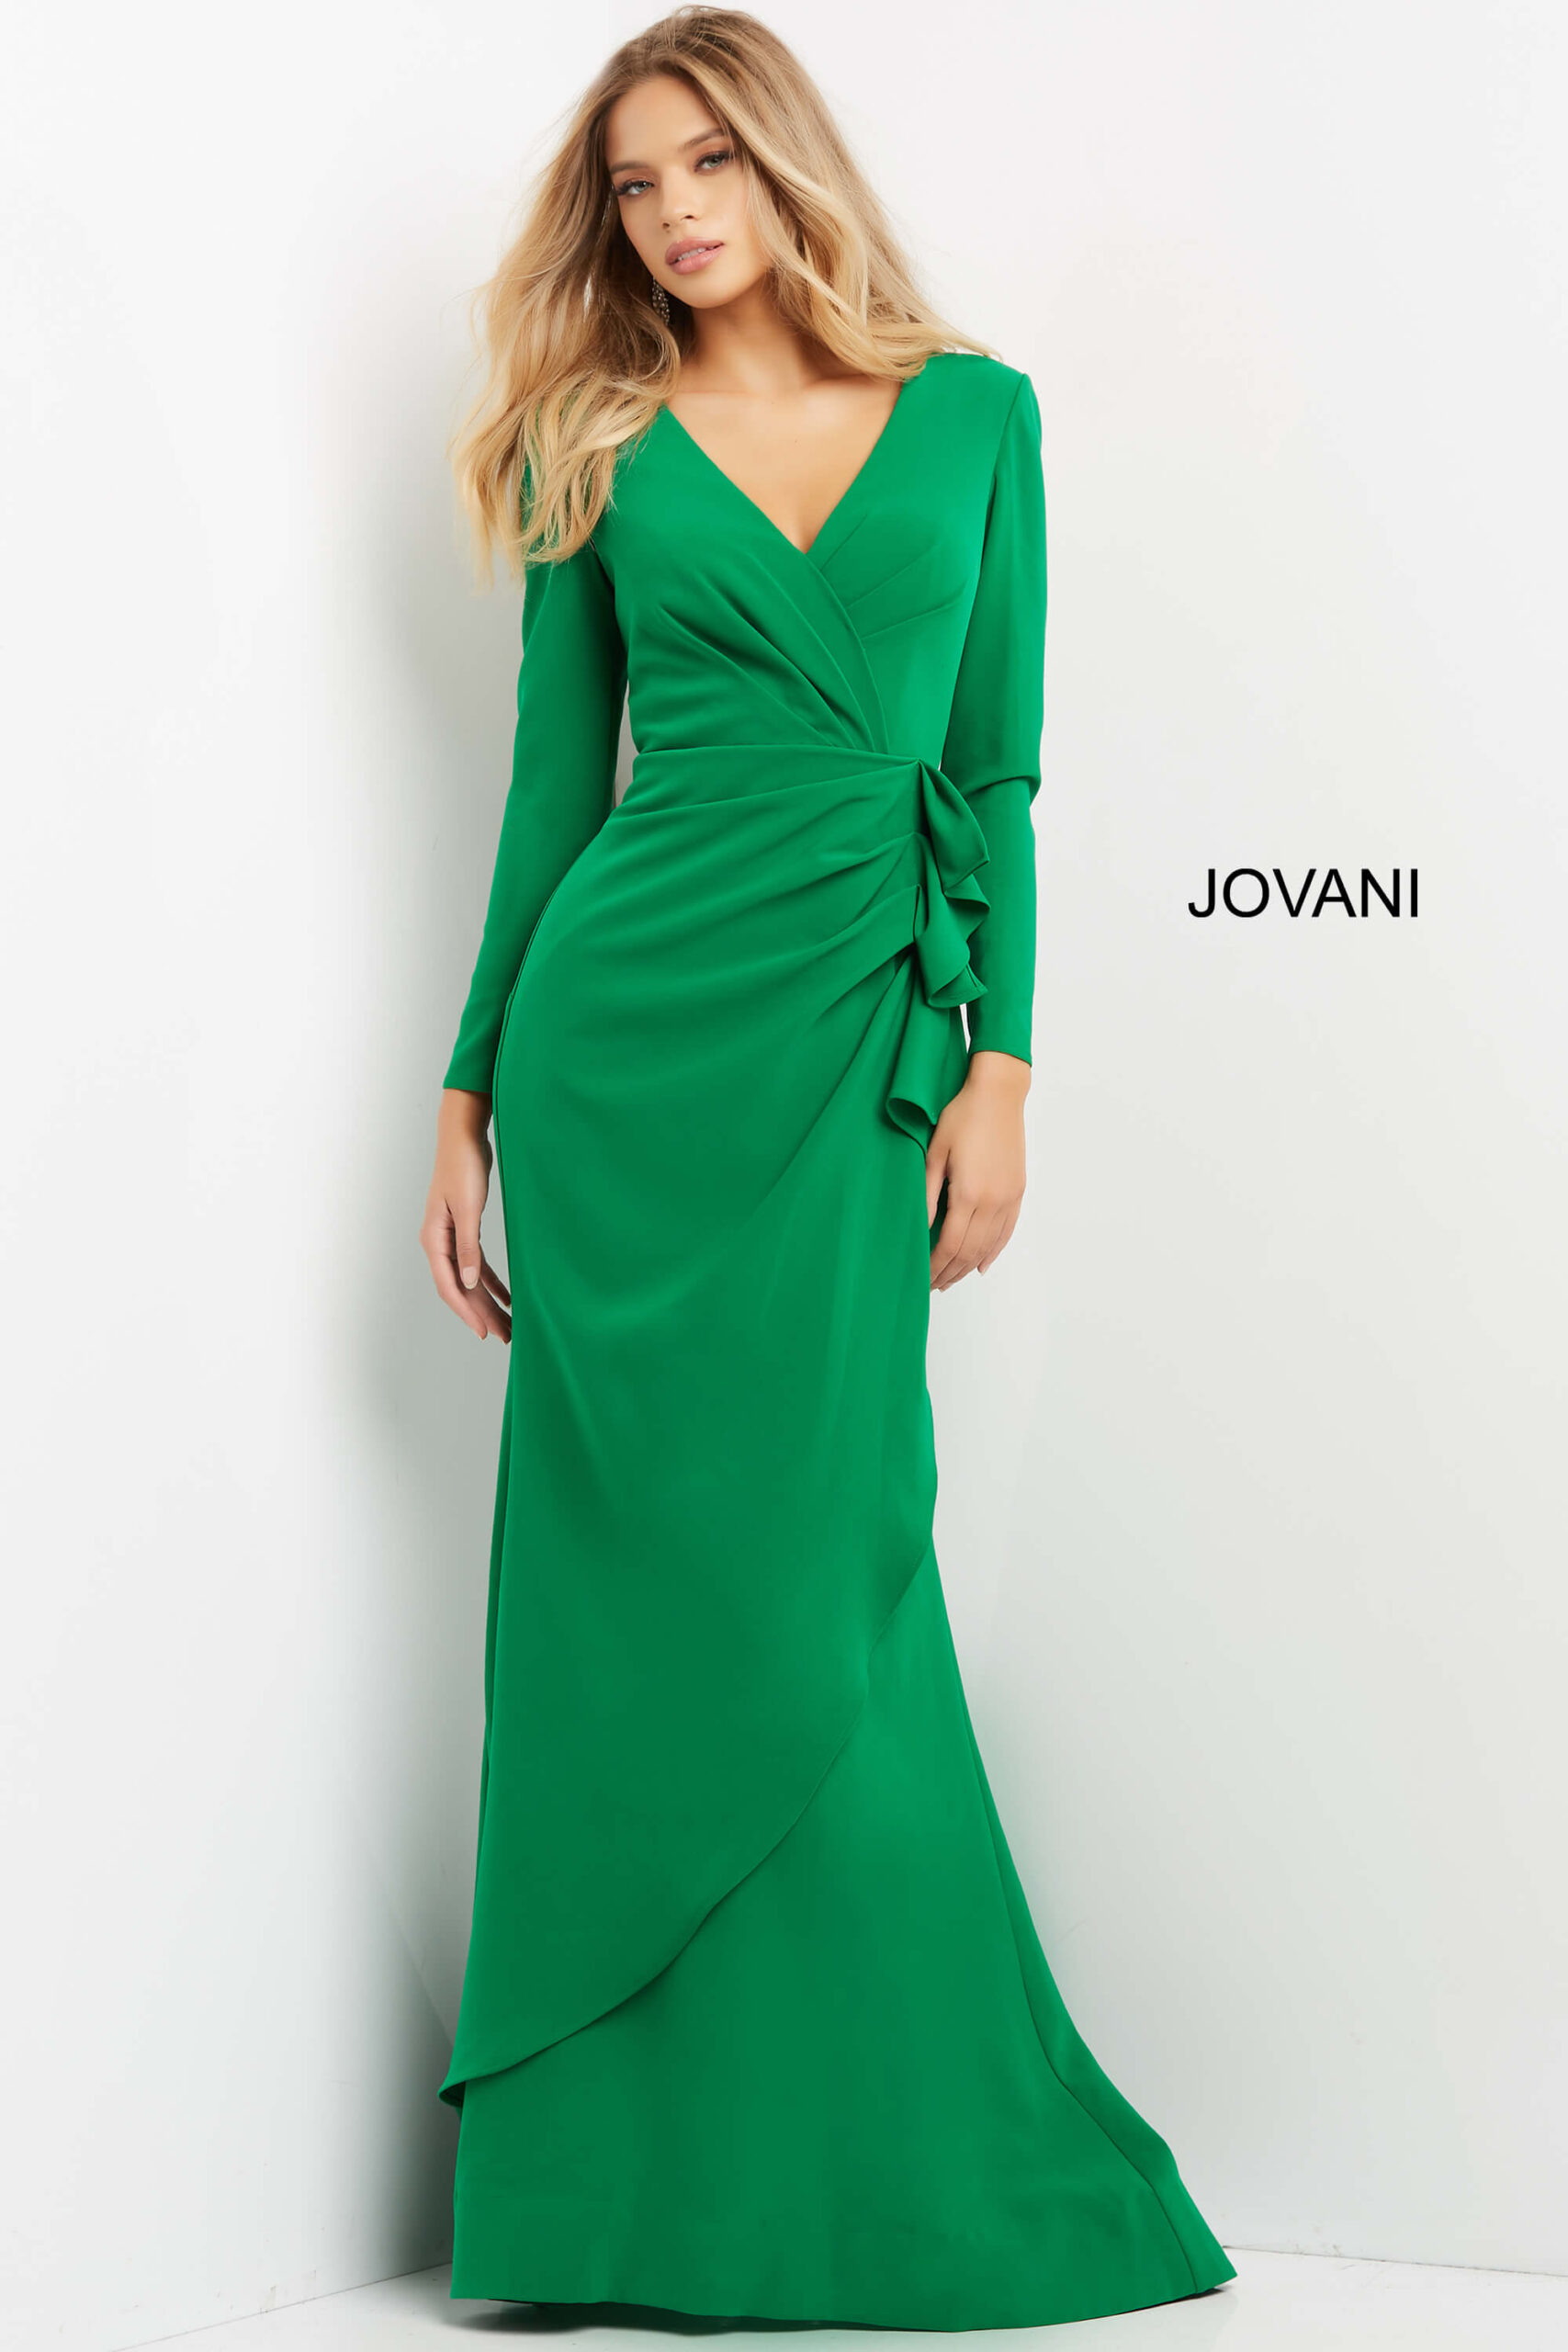 Jovani 06995 Emerald Long Sleeve V Neck Dress